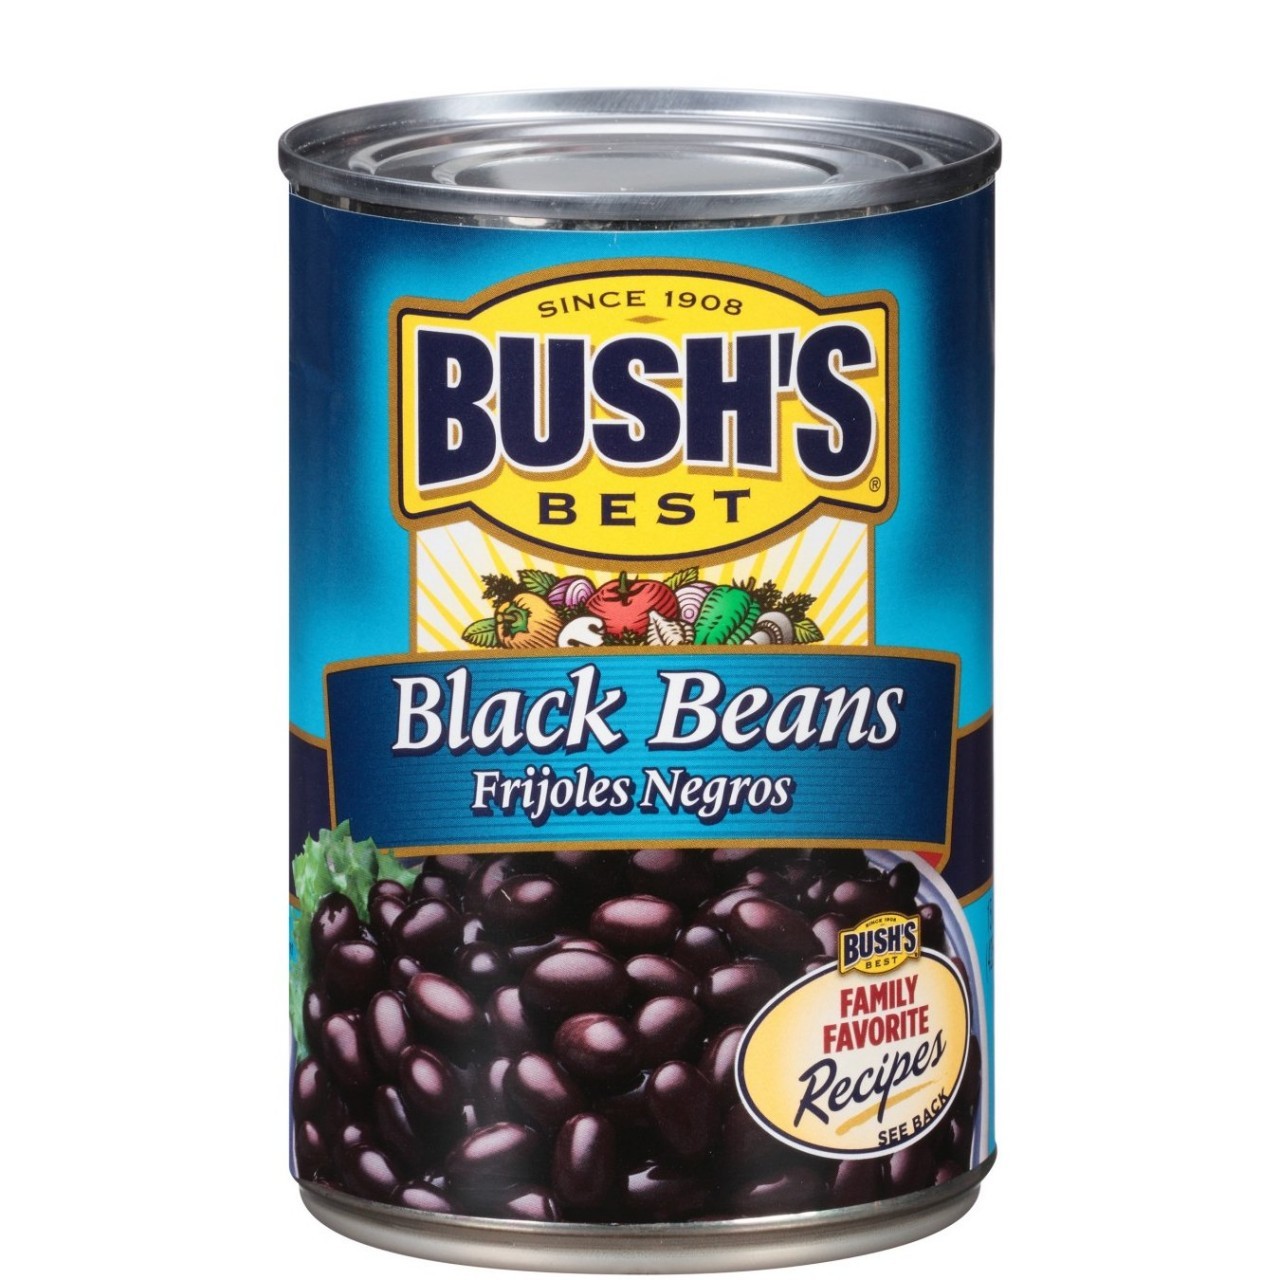 BUSHS BLACK BEANS 425g